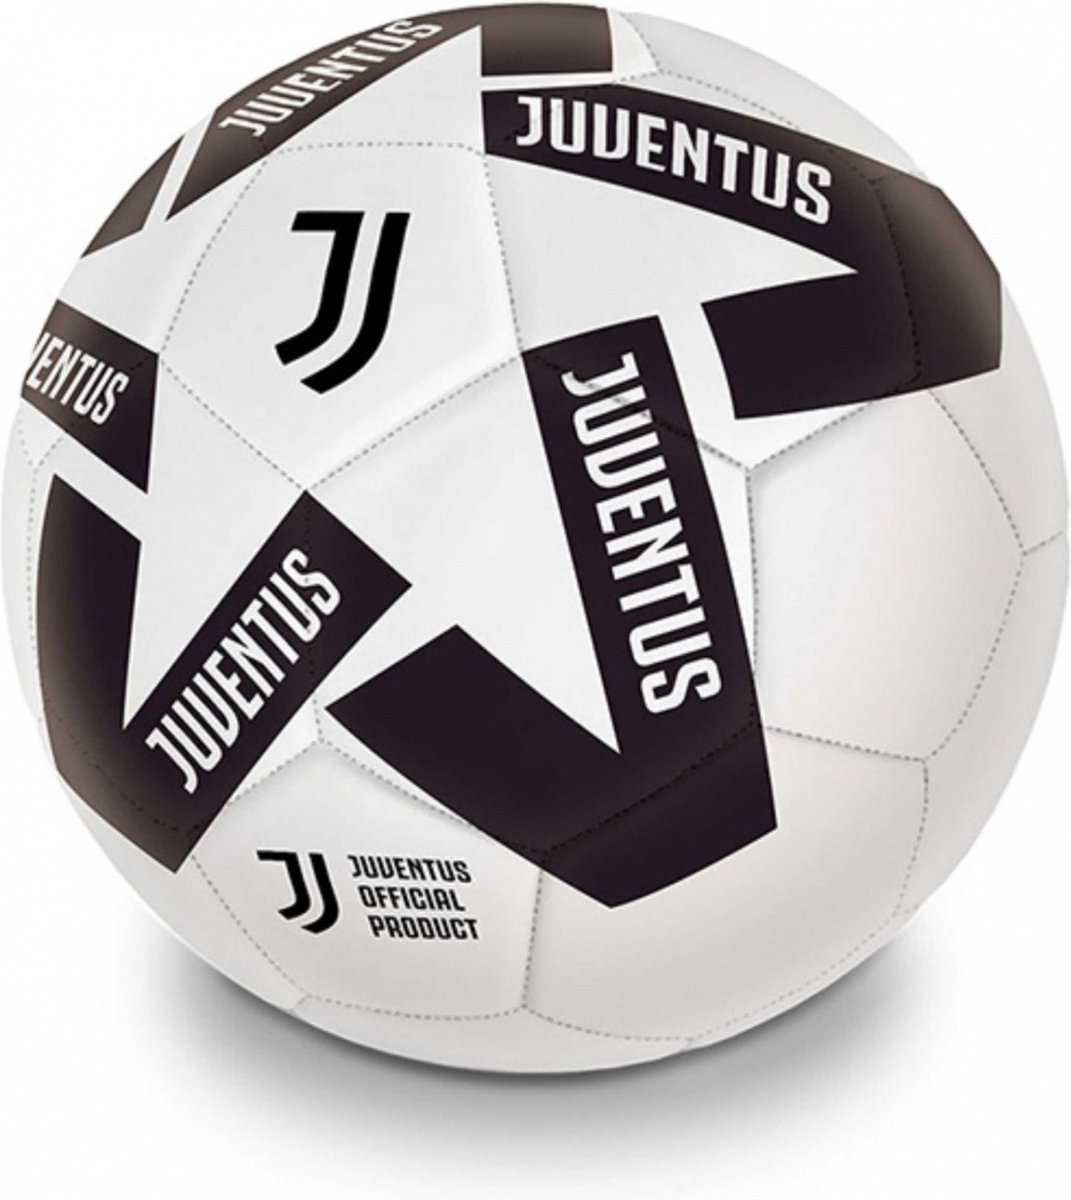 Juventus voetbal ster - maat 5 - wit